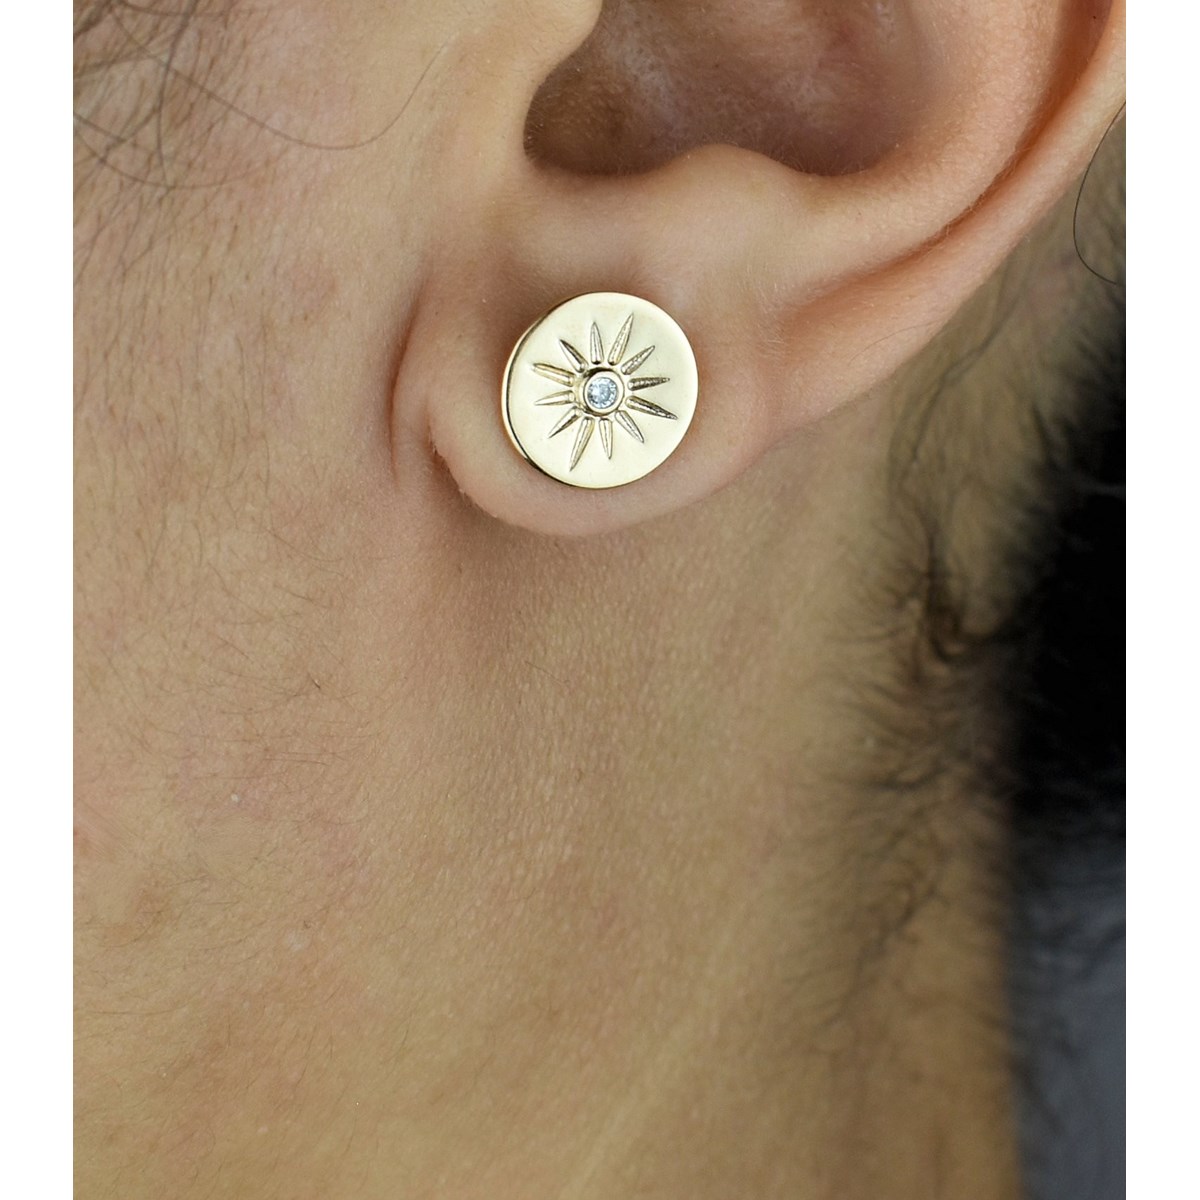 Boucles d'oreilles médaille soleil oxyde de zirconium Plaqué OR 750 3 microns - vue 2